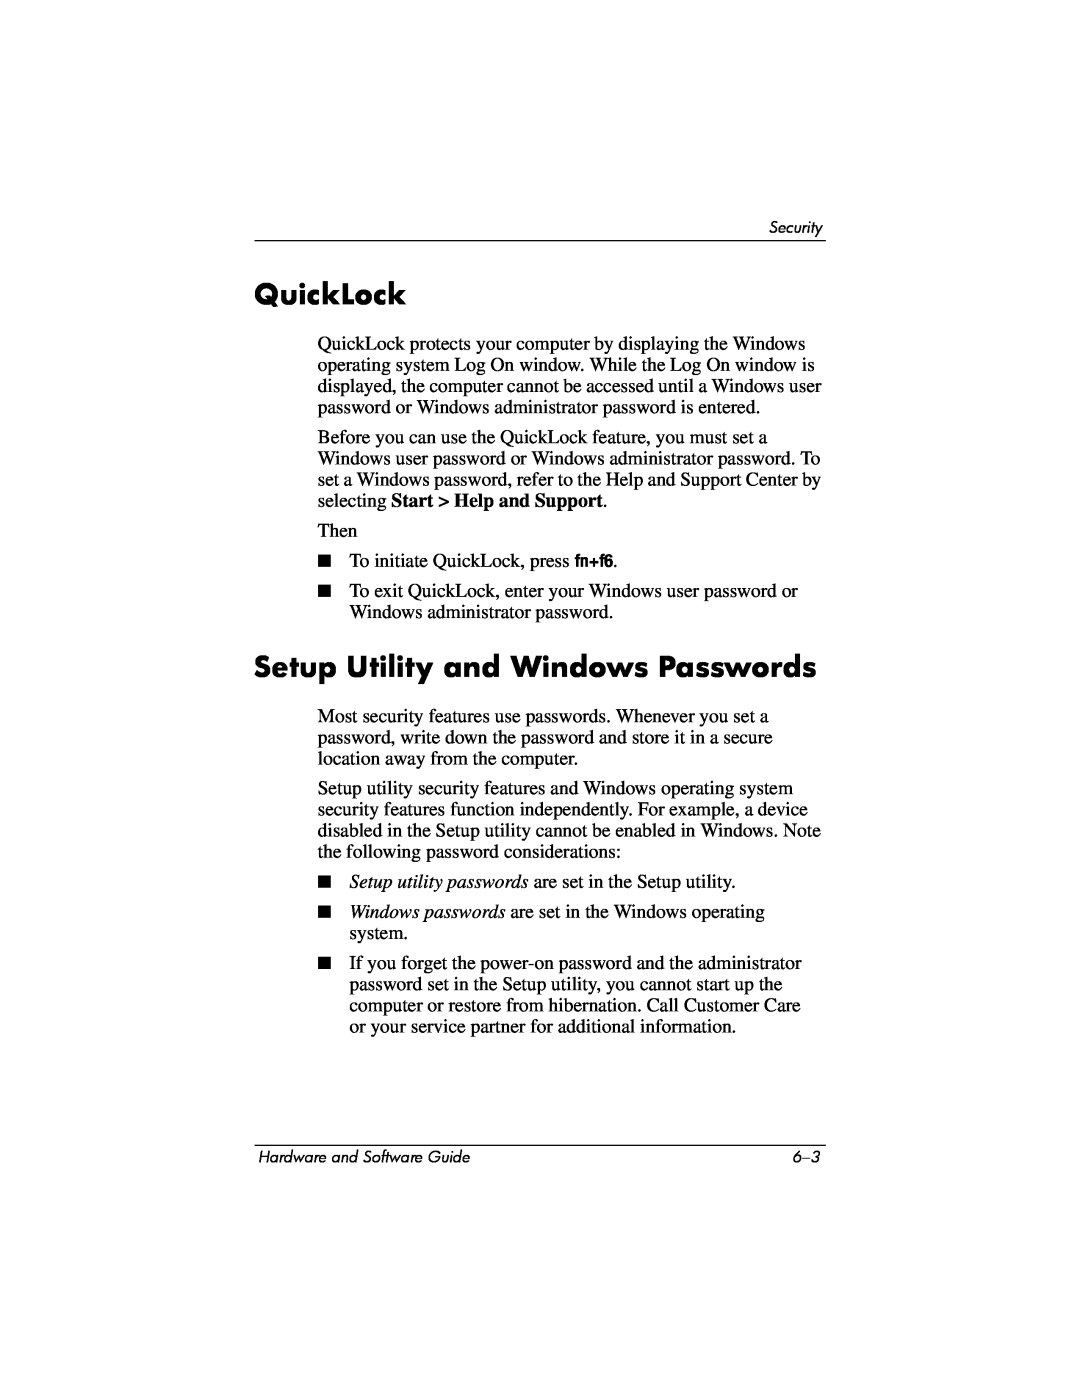 Compaq Presario M2000 manual QuickLock, Setup Utility and Windows Passwords 